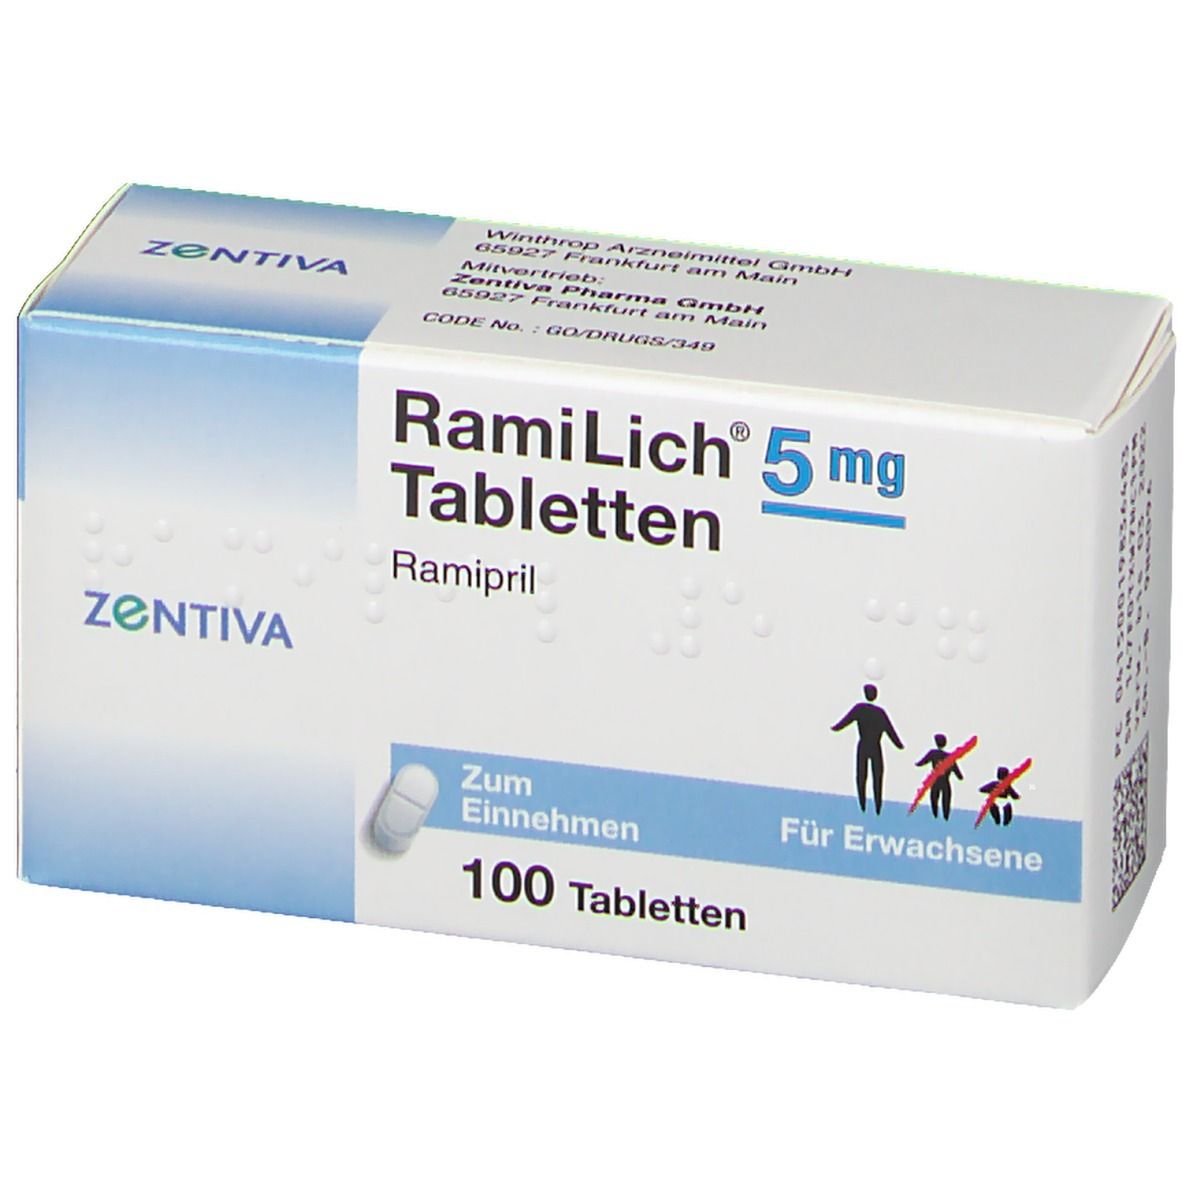 RamiLich® 5 mg